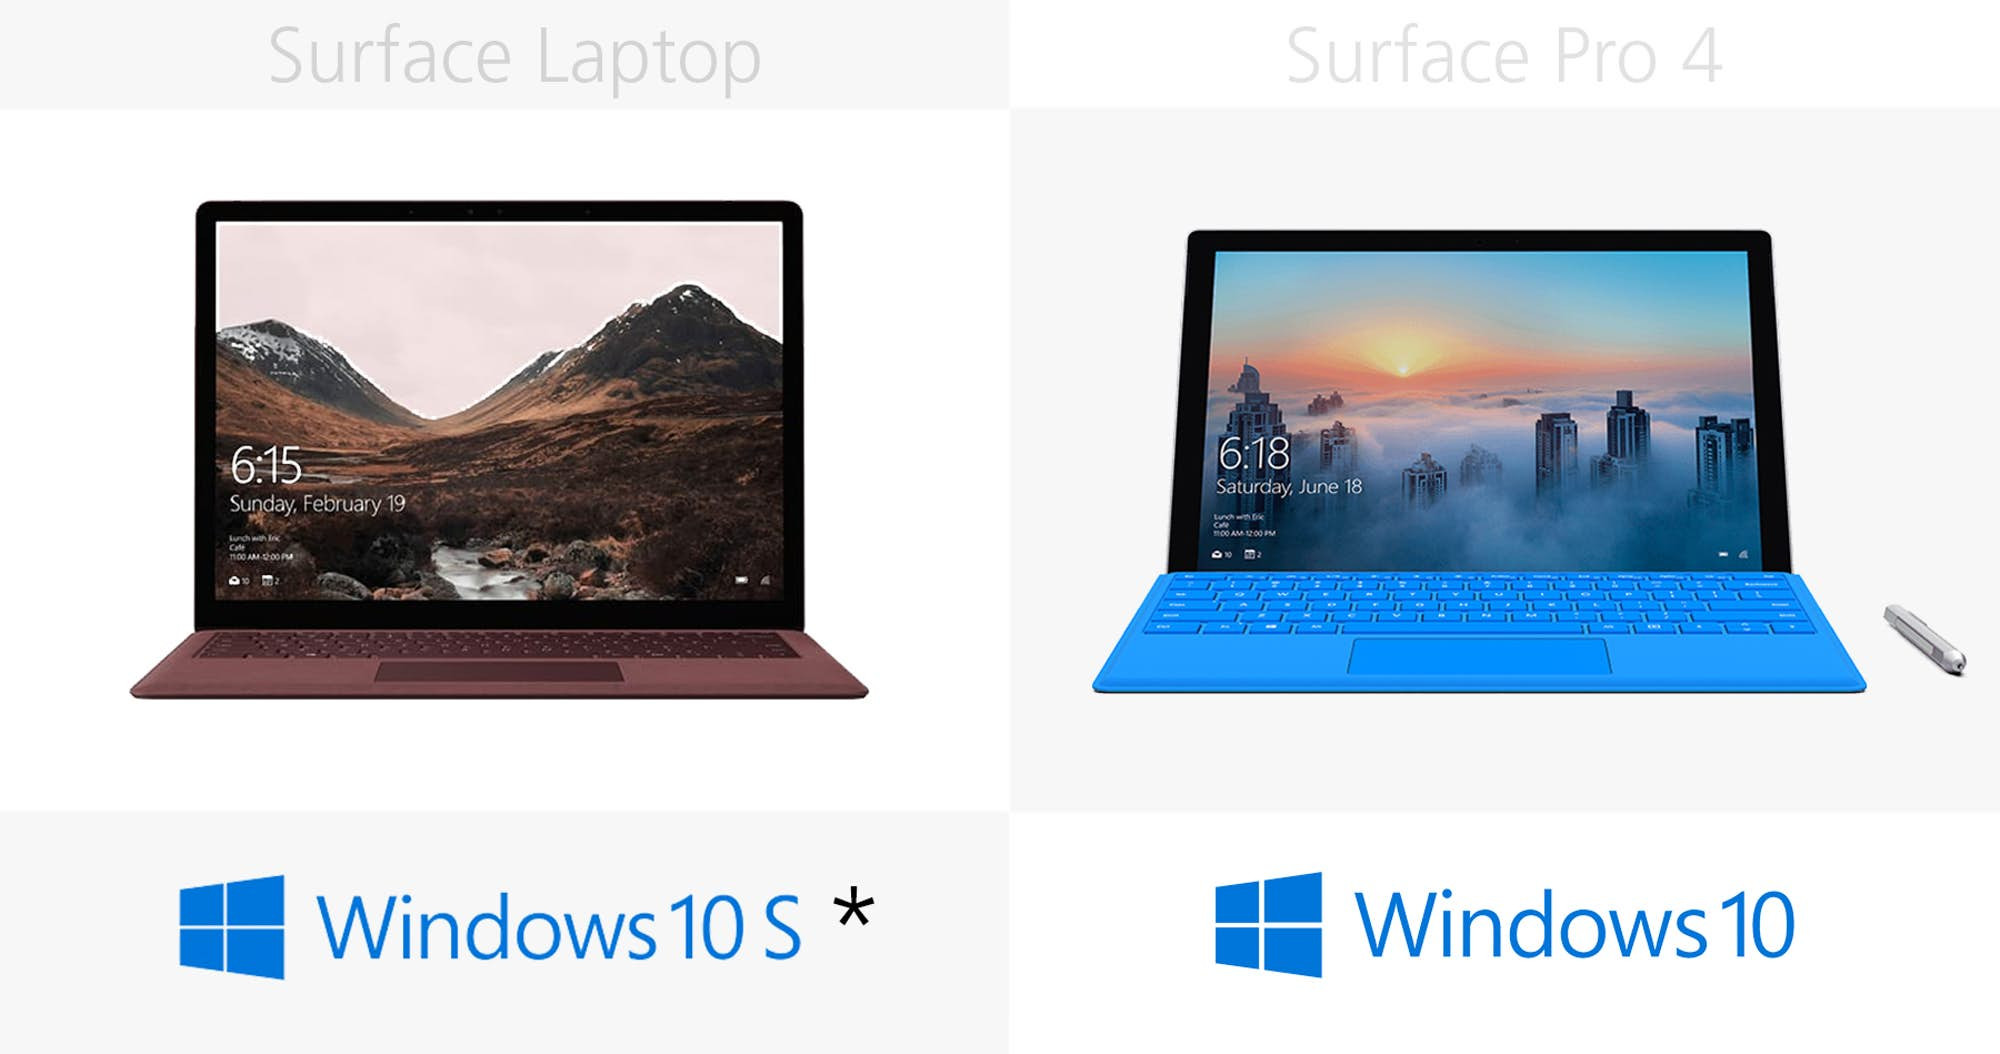 1493969690_microsoft-surface-laptop-vs-surface-pro-4-specs-comparison-2.jpg